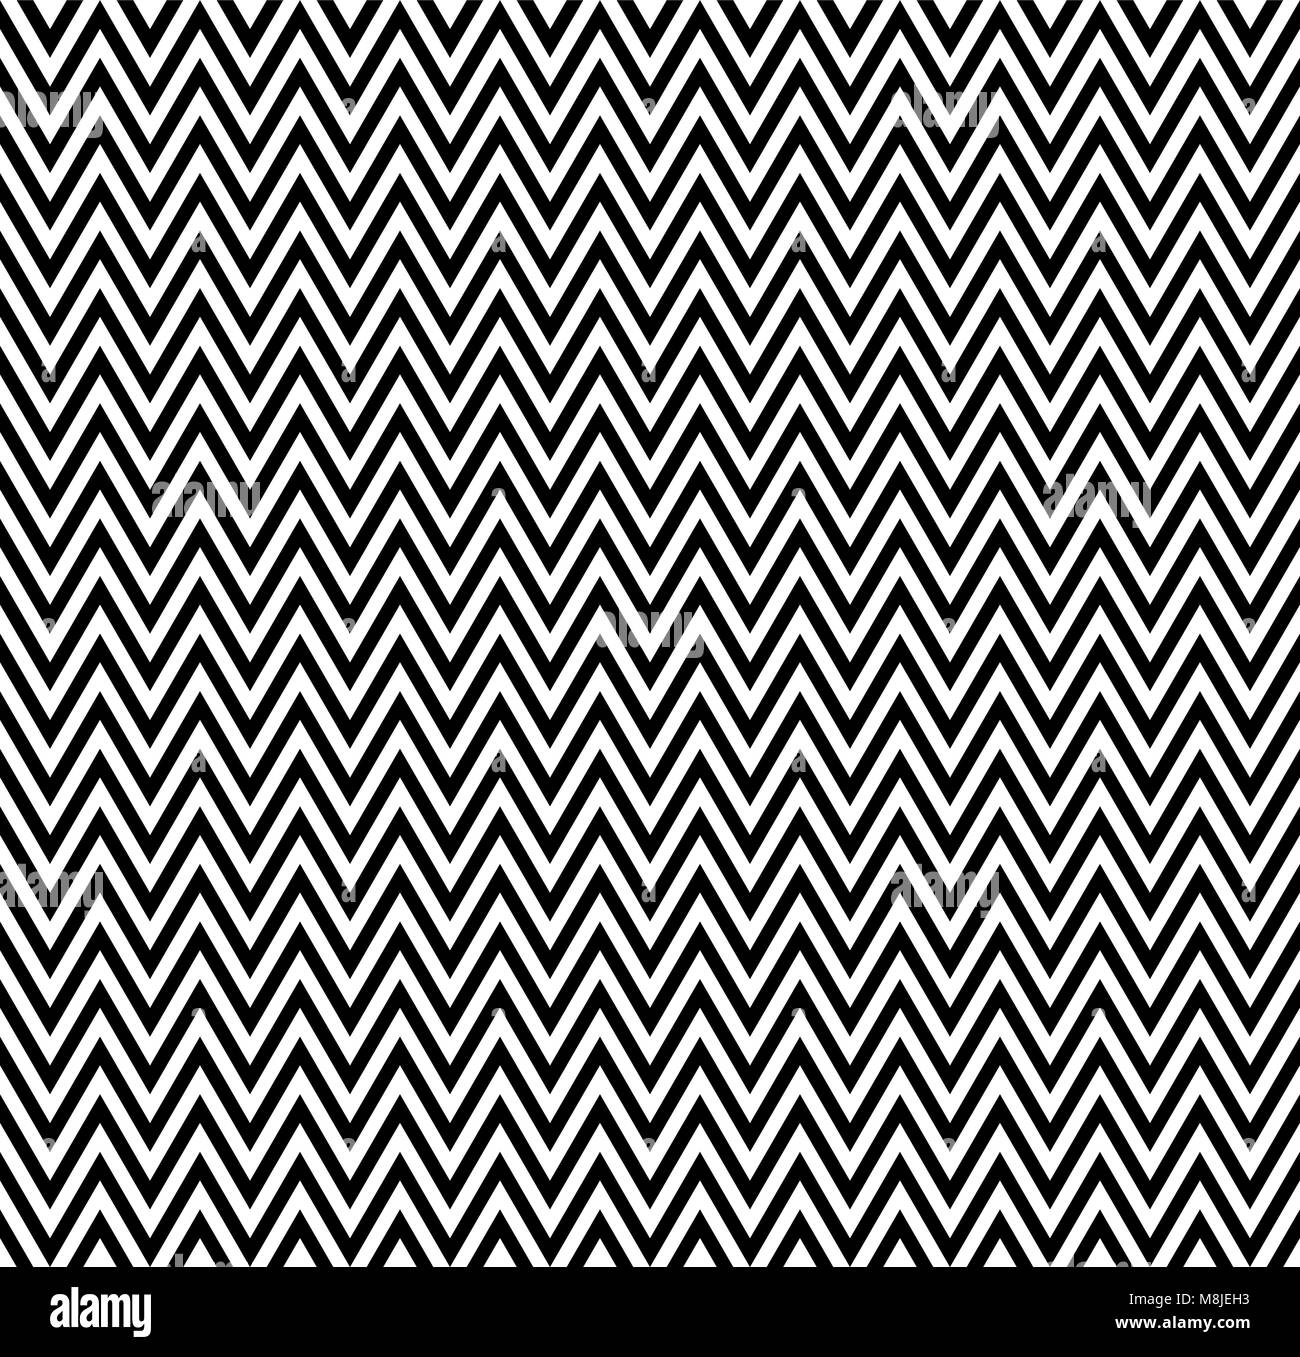 Horizontale schwarze und weiße Streifen Zick-Zack-Muster. Geometrische wiederholendes Muster von Zickzack. Vektor Design Stock Vektor